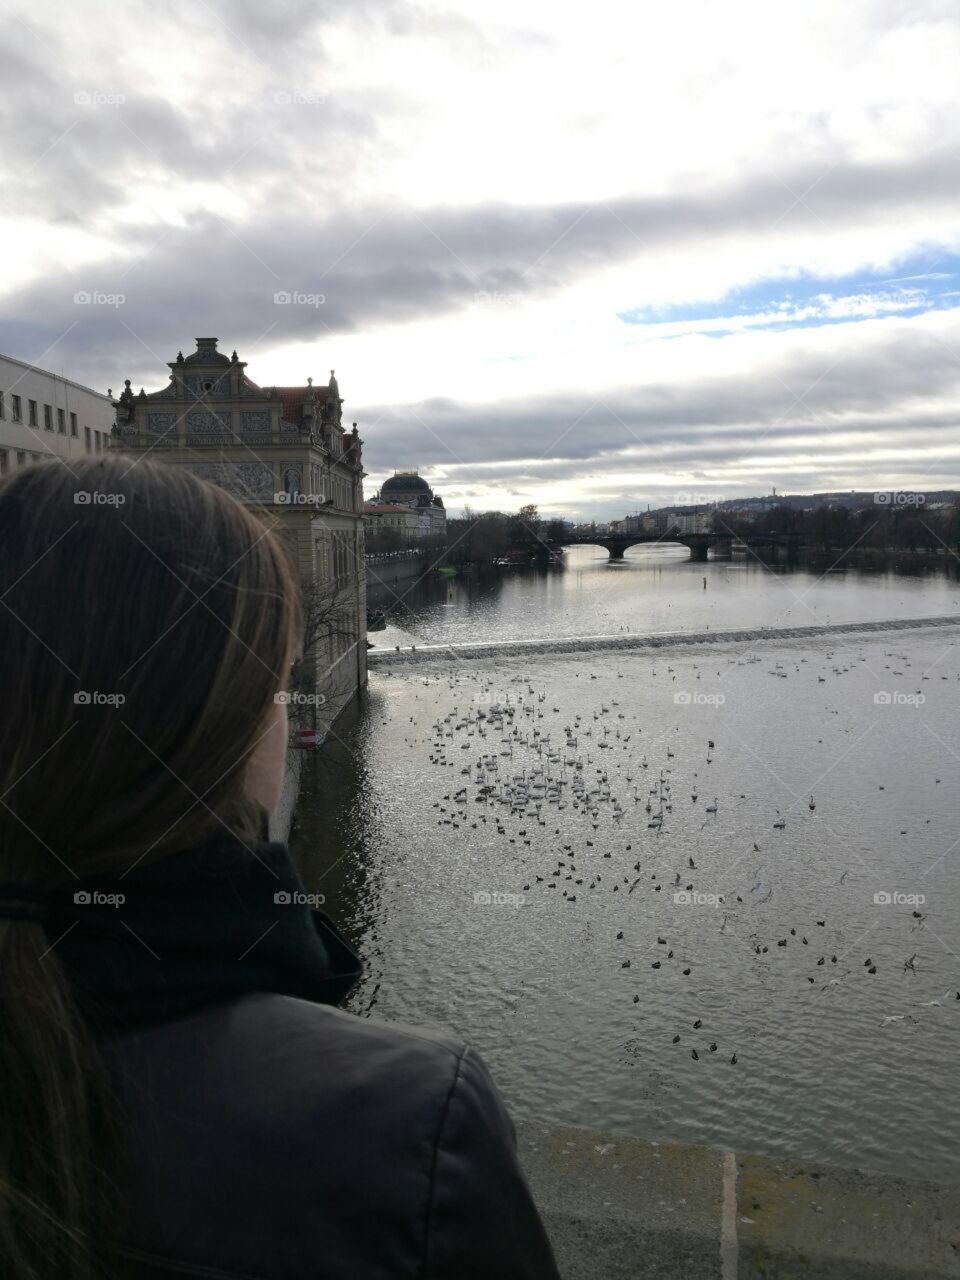 Beautiful view at Charles bridge, Prague.